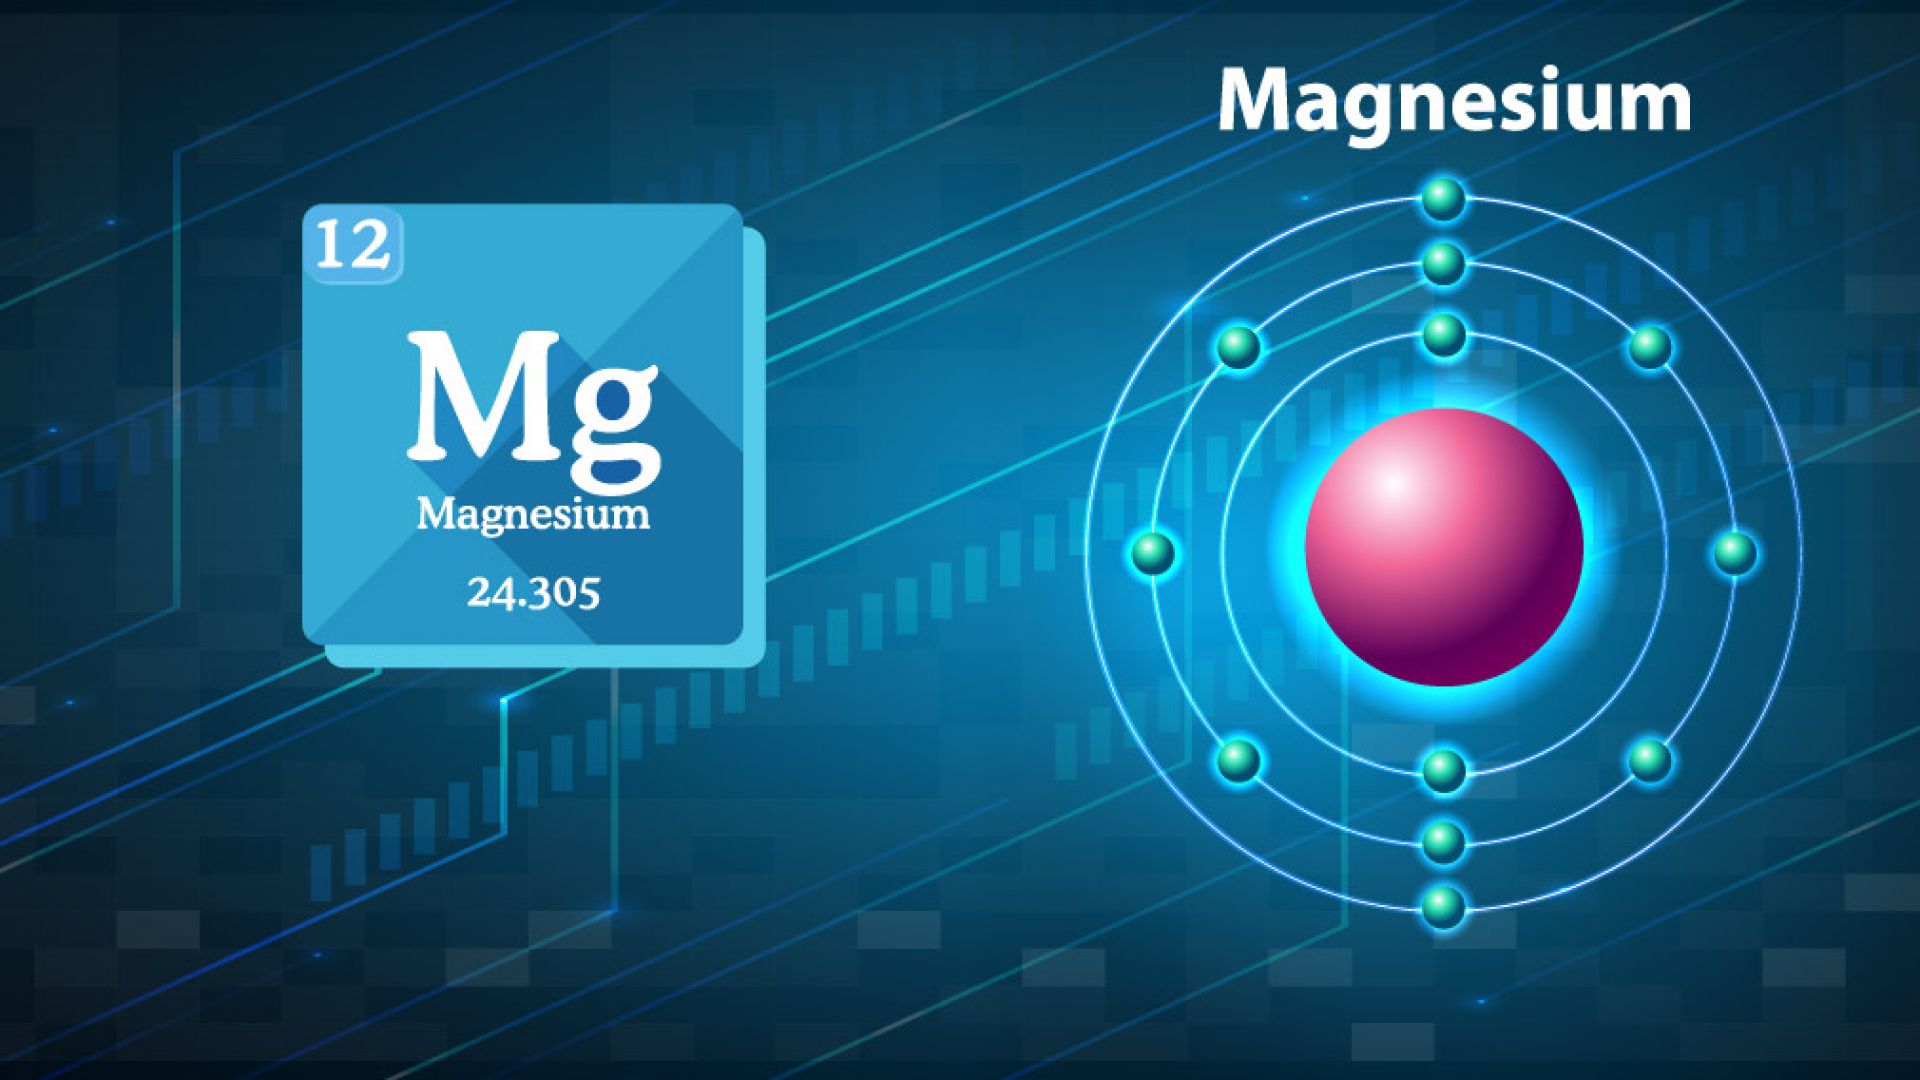 Последно поколение магнезий разчупи статуквото за най-известния минерал. Иновативната разработка